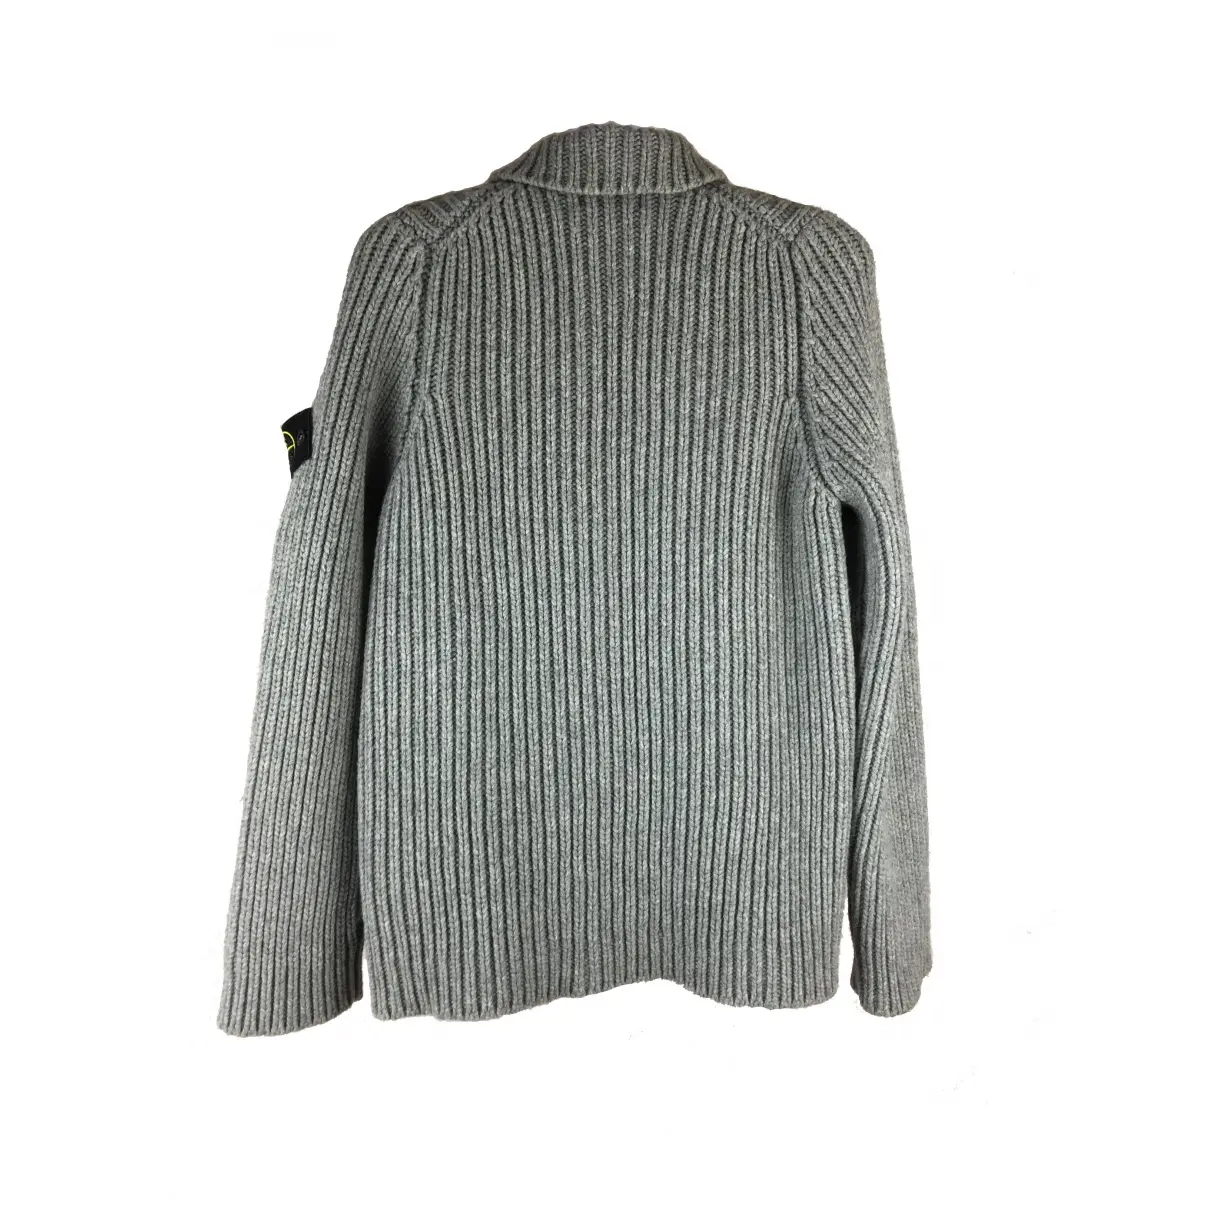 Buy Stone Island Wool vest online - Vintage